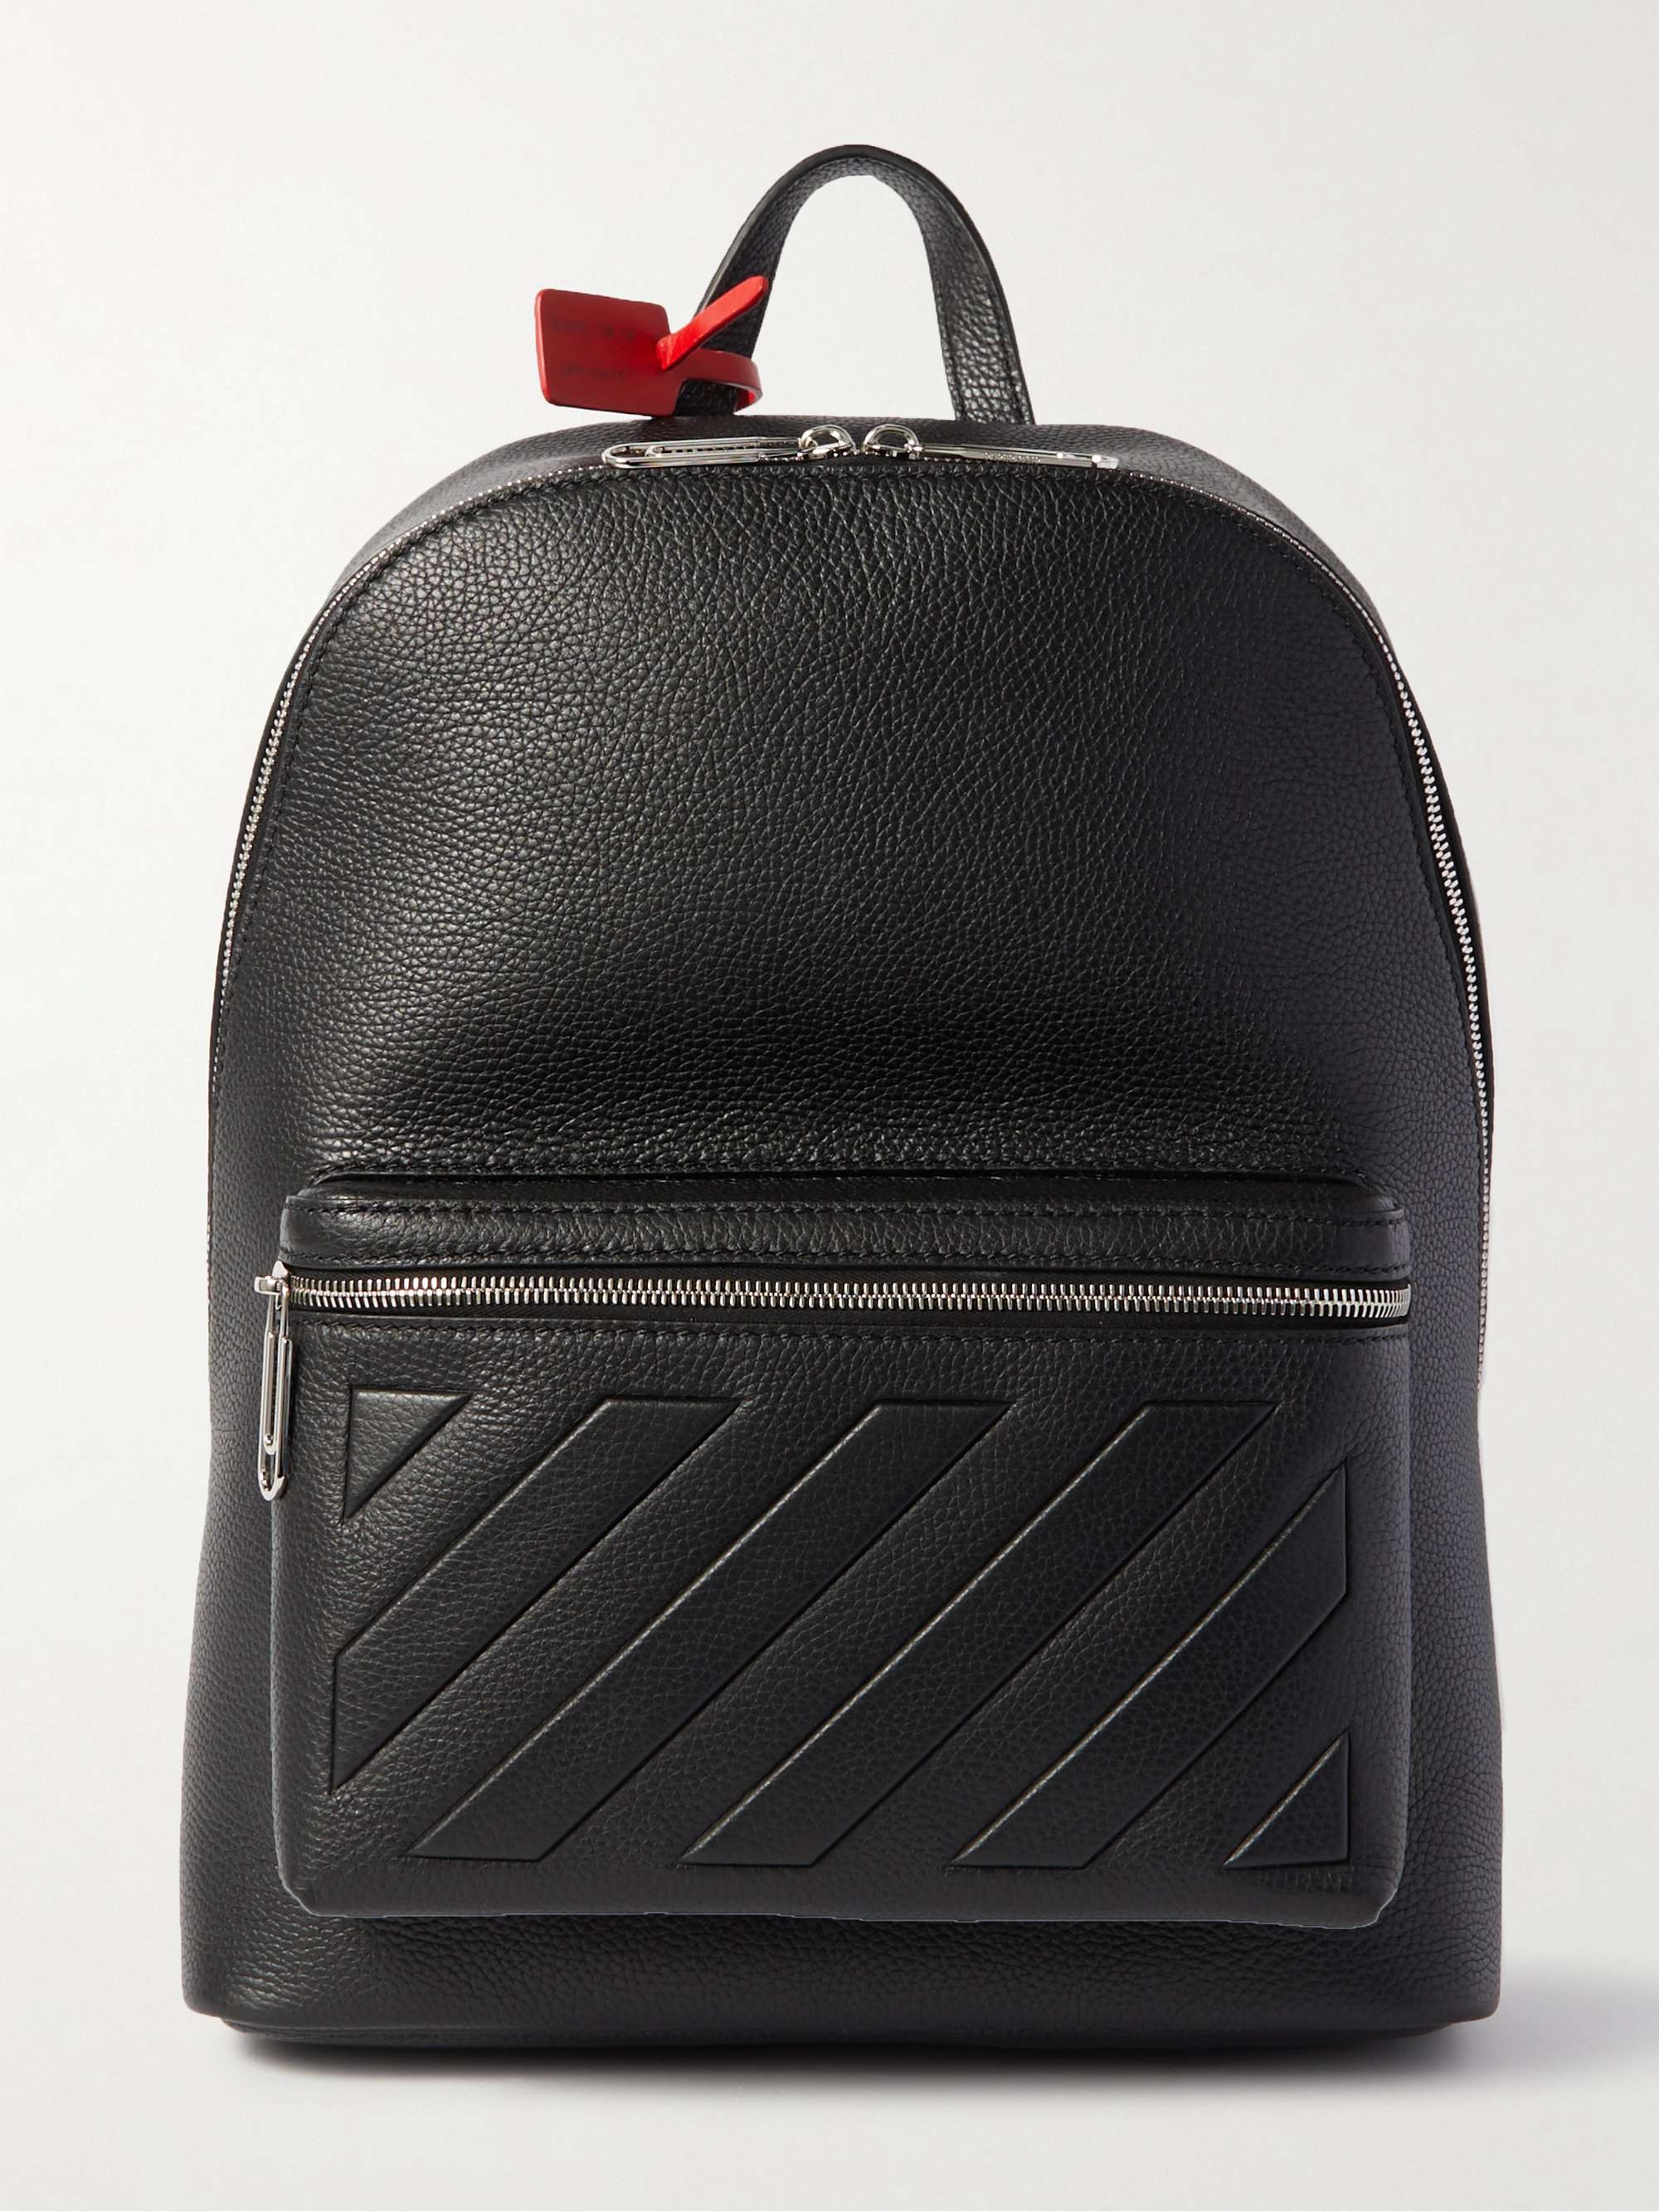 OFF-WHITE Binder Embossed Full-Grain Leather Backpack for Men